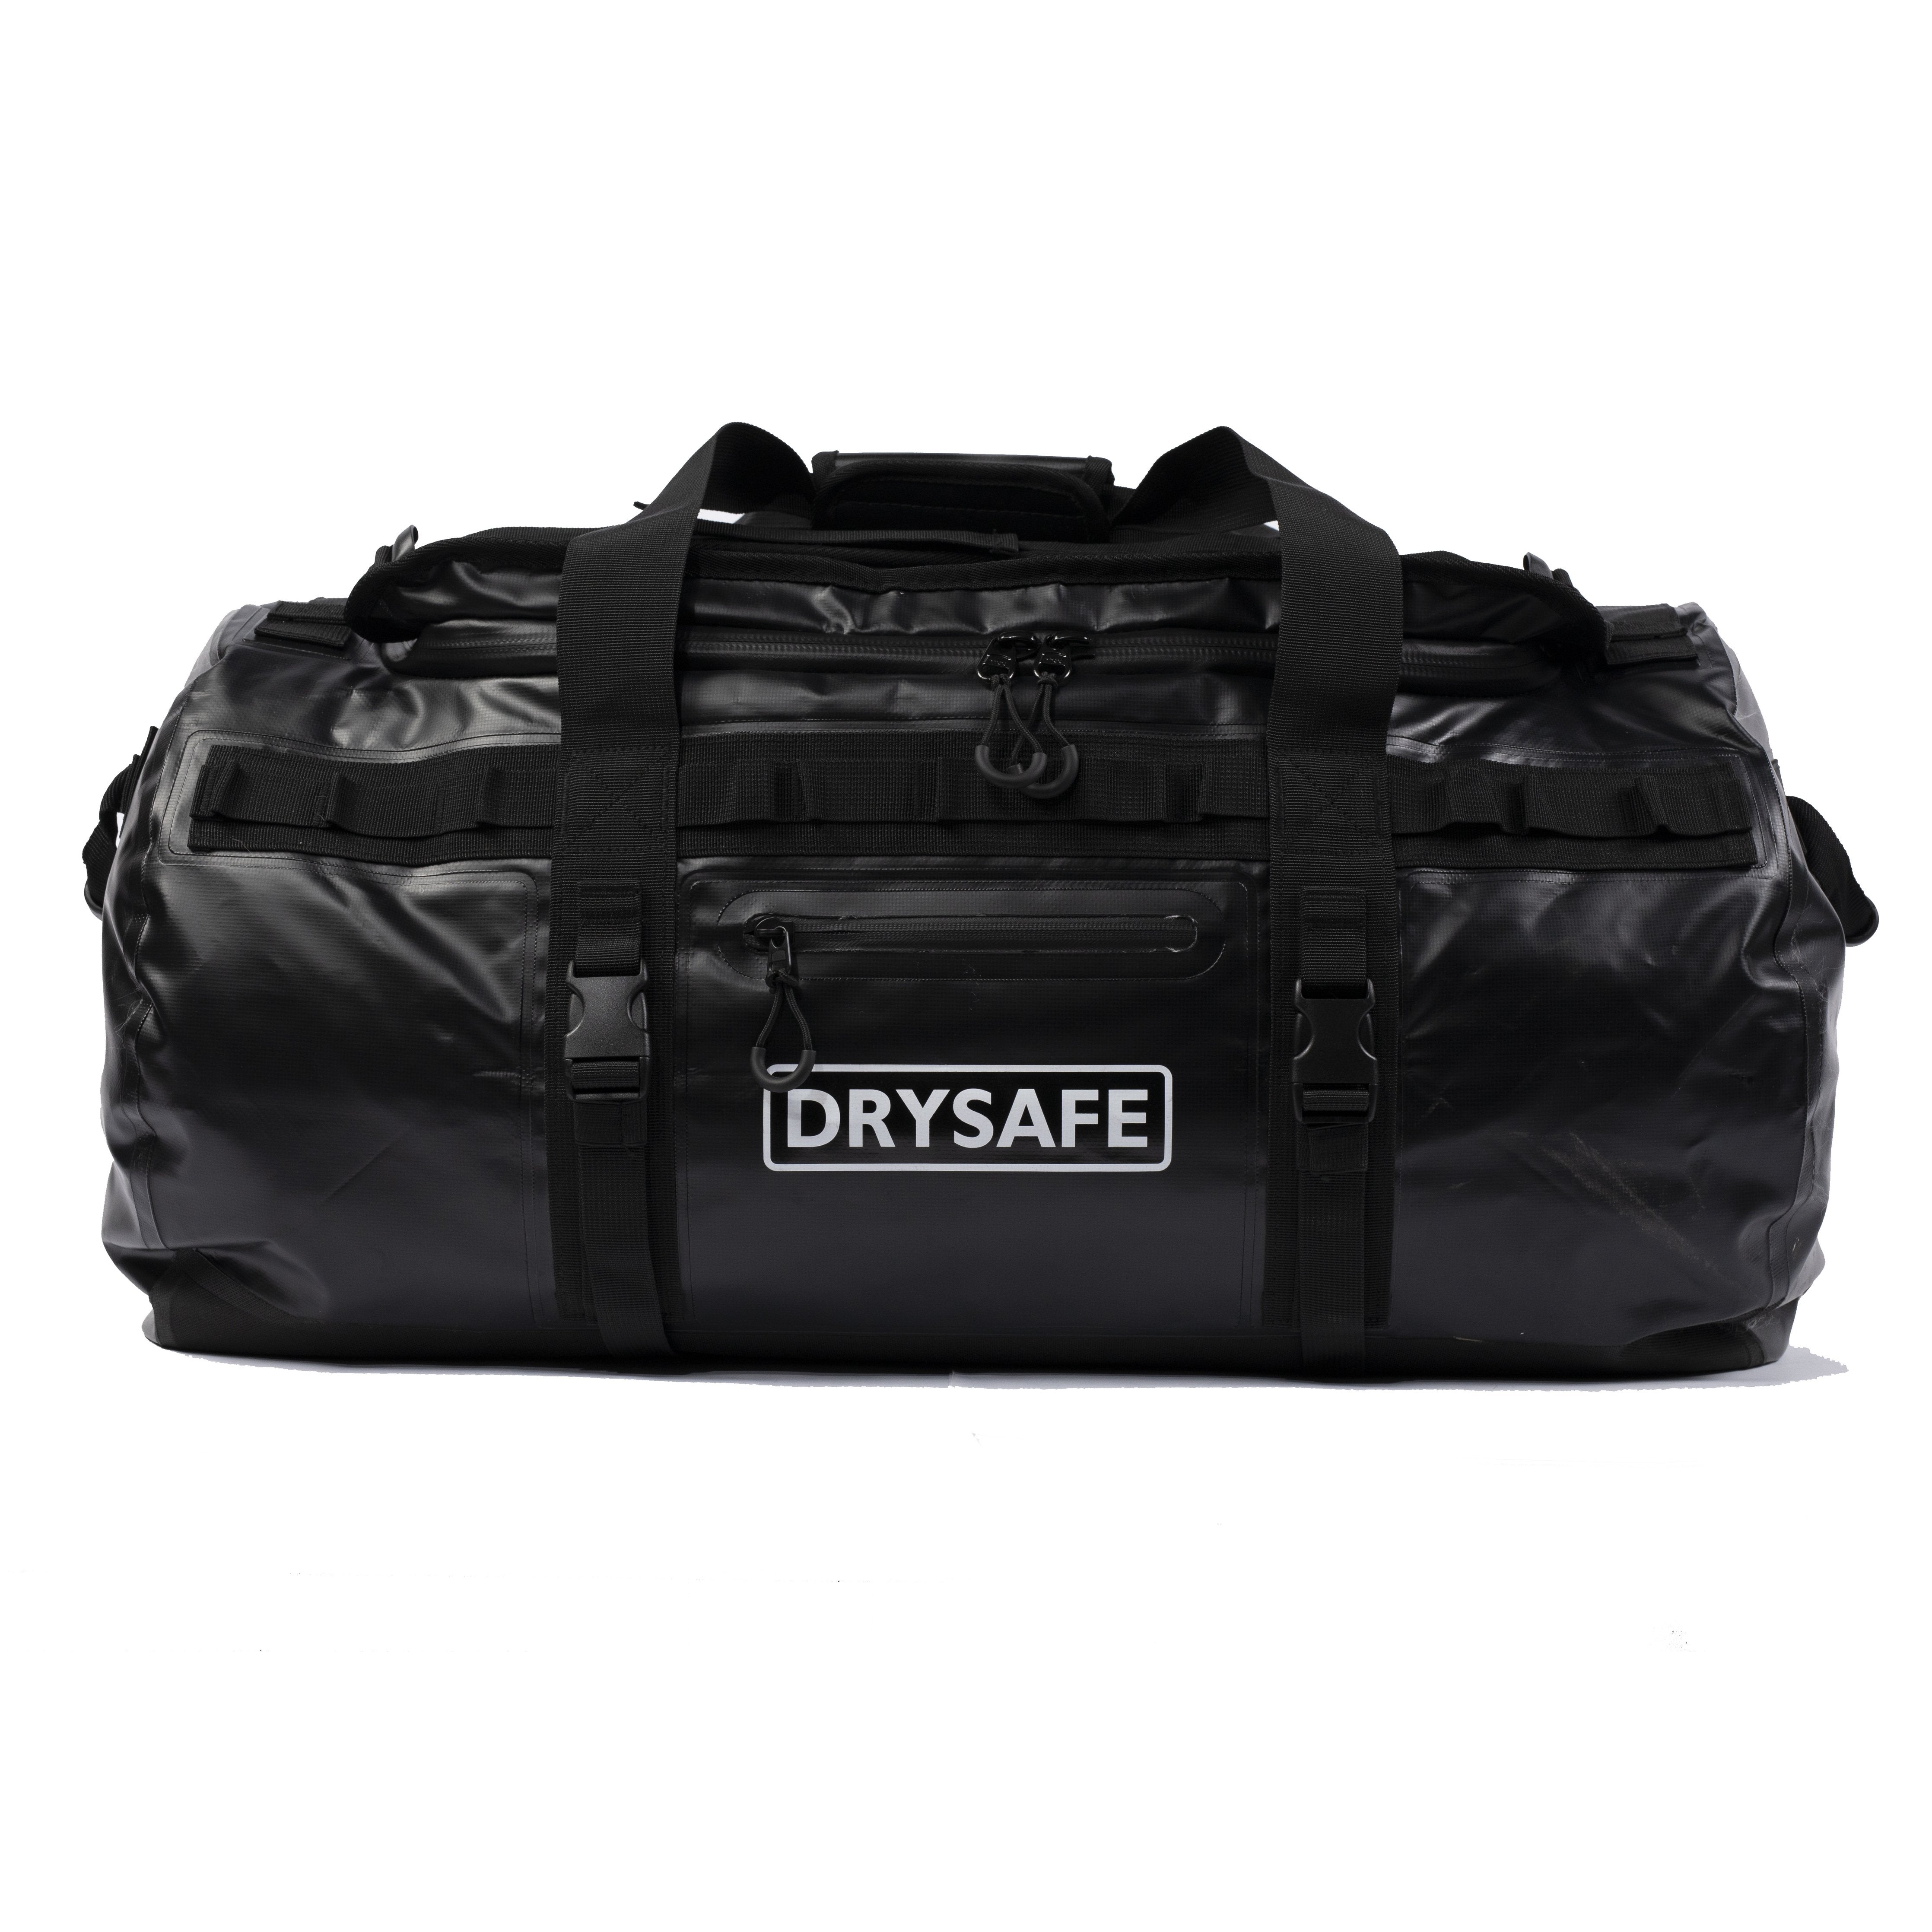 Highlander Drybag Duffle 35L Negro. Macuto suficientemente resistente